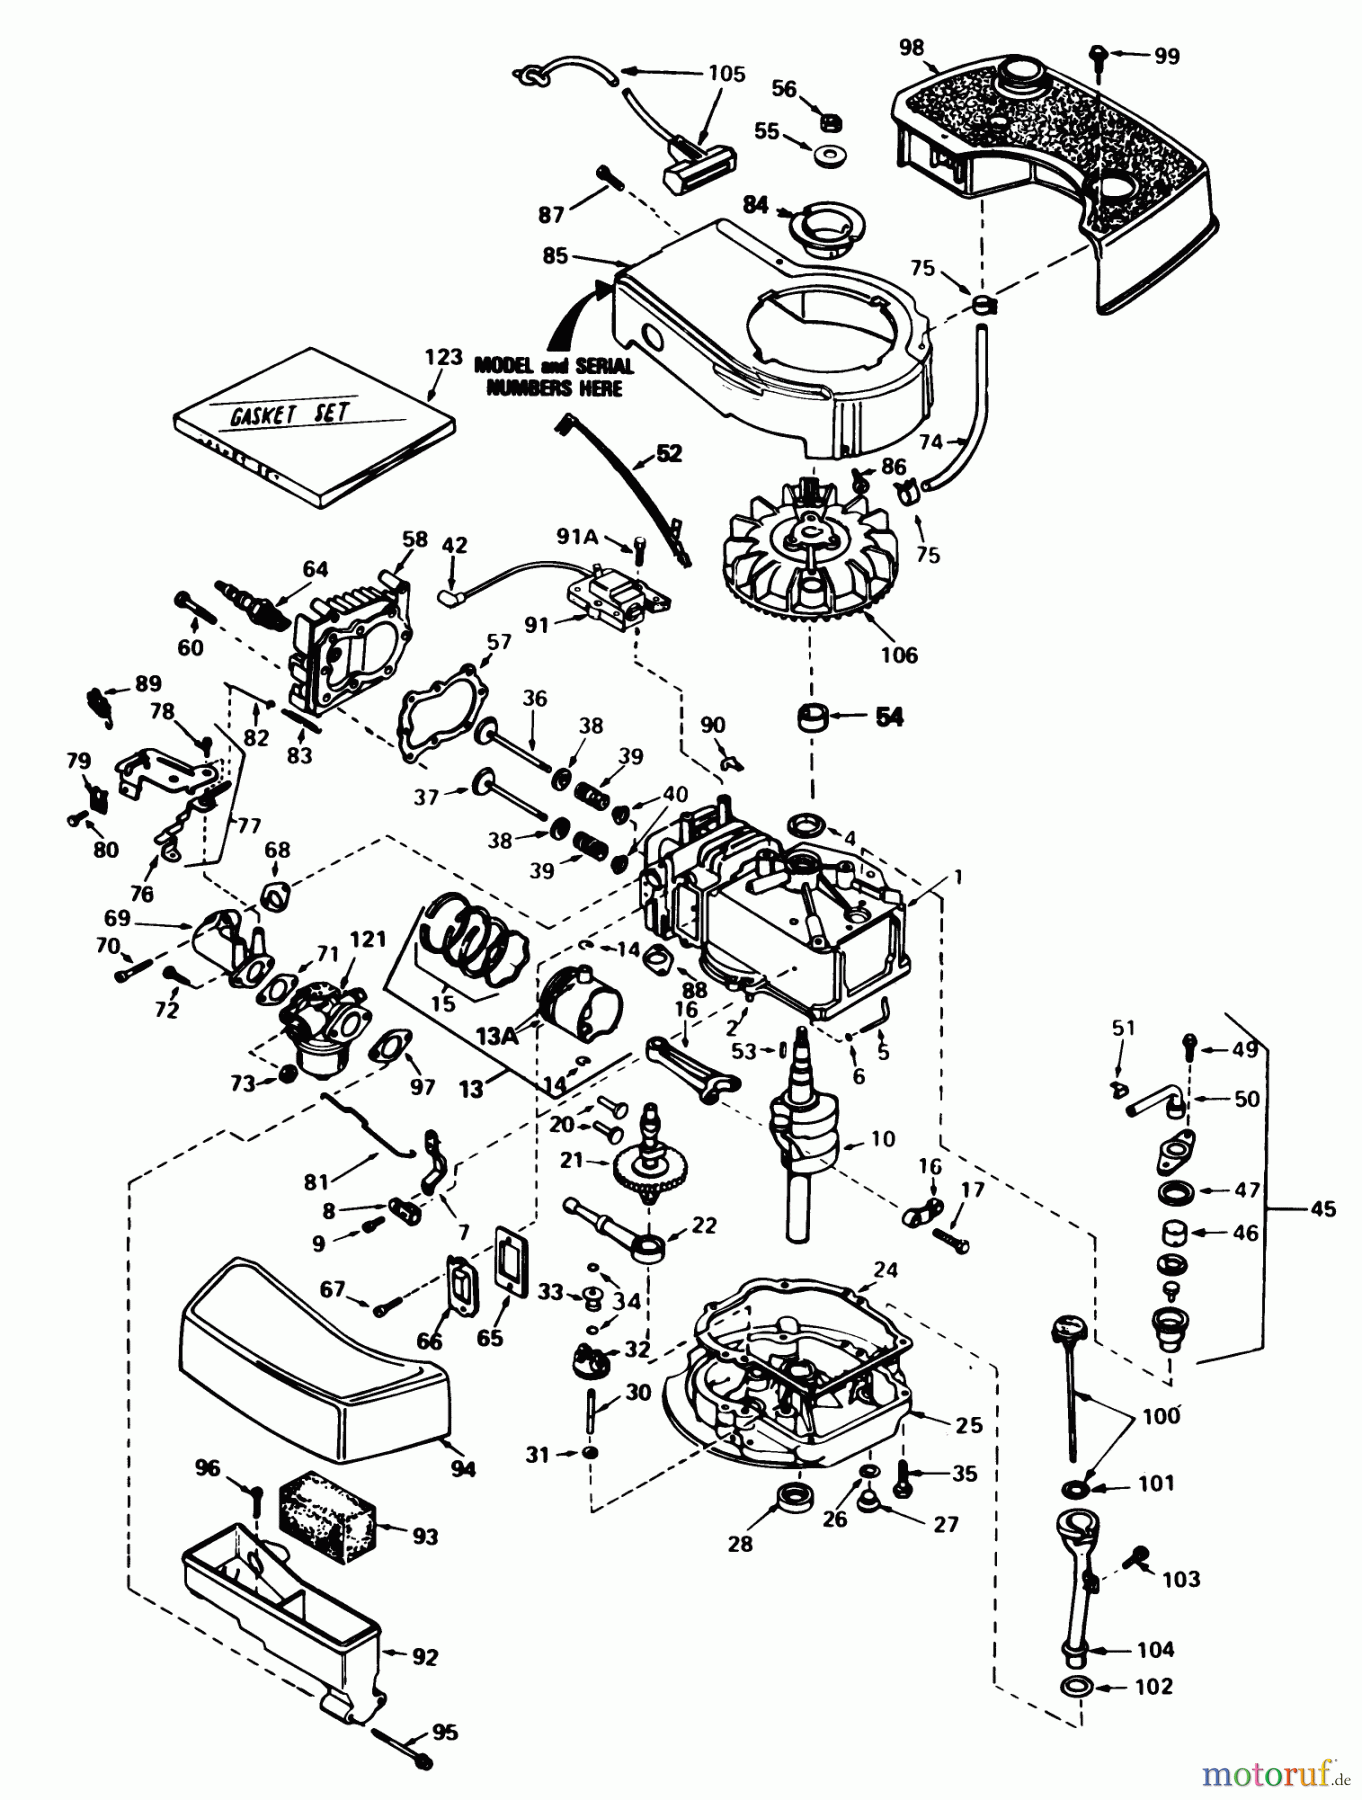  Toro Neu Mowers, Walk-Behind Seite 1 20715 - Toro Lawnmower, 1983 (3000001-3999999) ENGINE TECUMSEH MODEL NO. TNT100-10087E